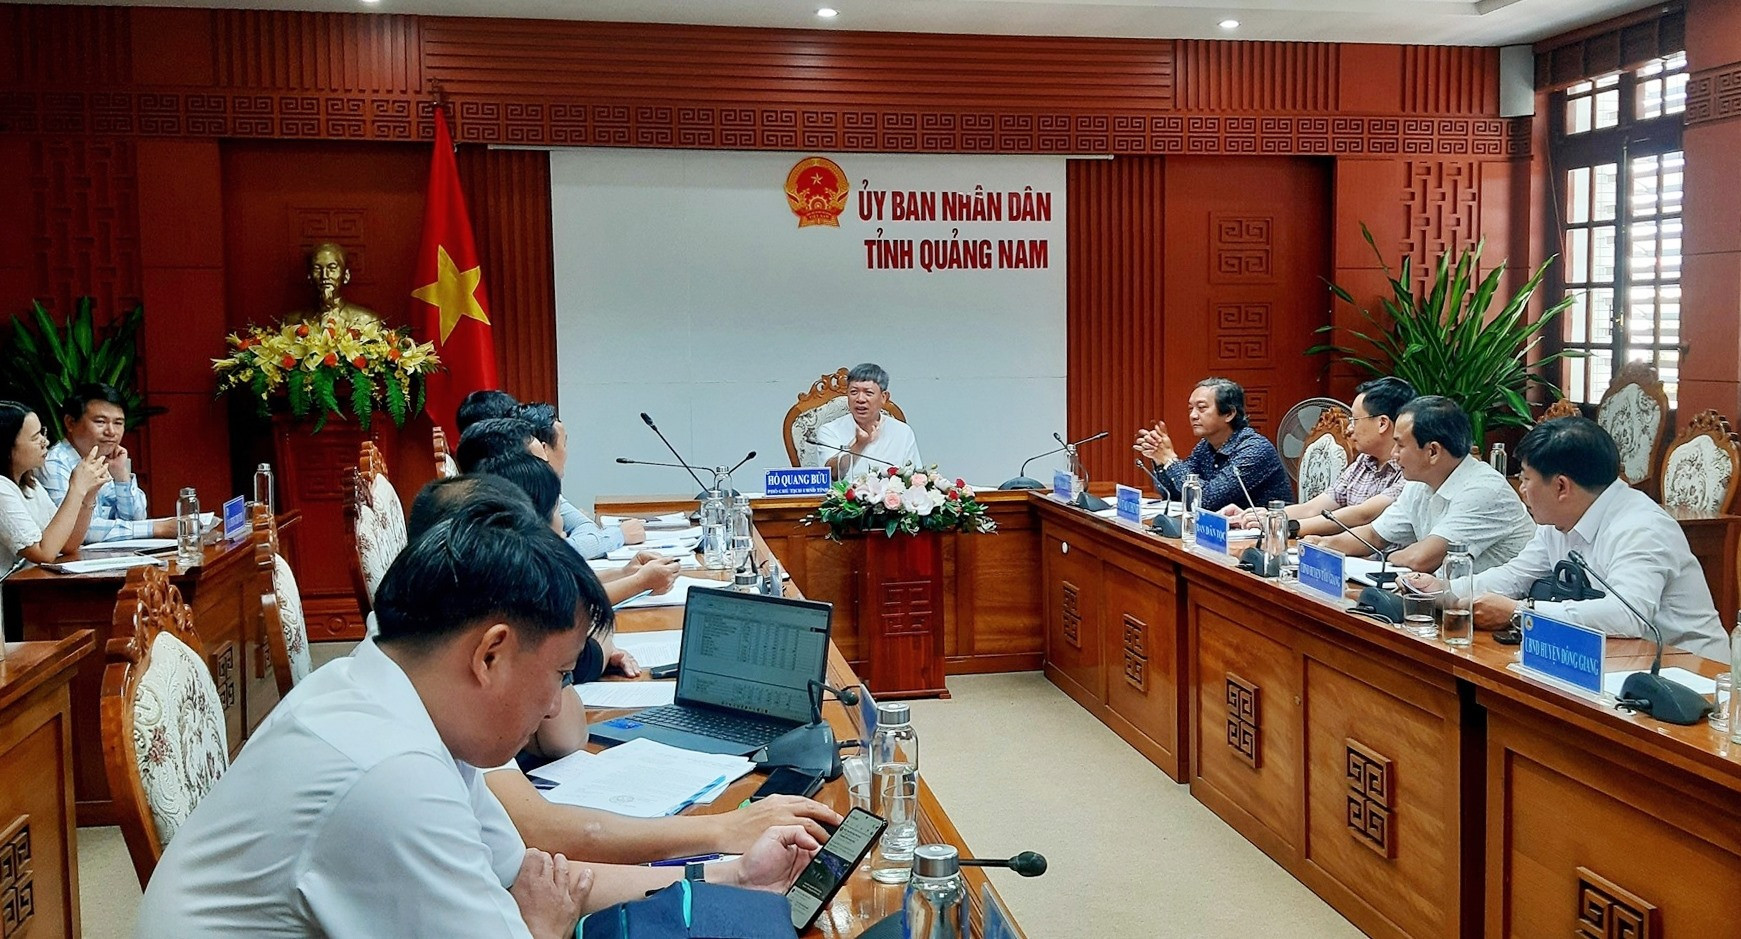 Phó Chủ tịch UBND tỉnh Hồ Quang Bửu chủ trì cuộc họp với lãnh đạo các ngành, địa phương liên quan. Ảnh: N.S